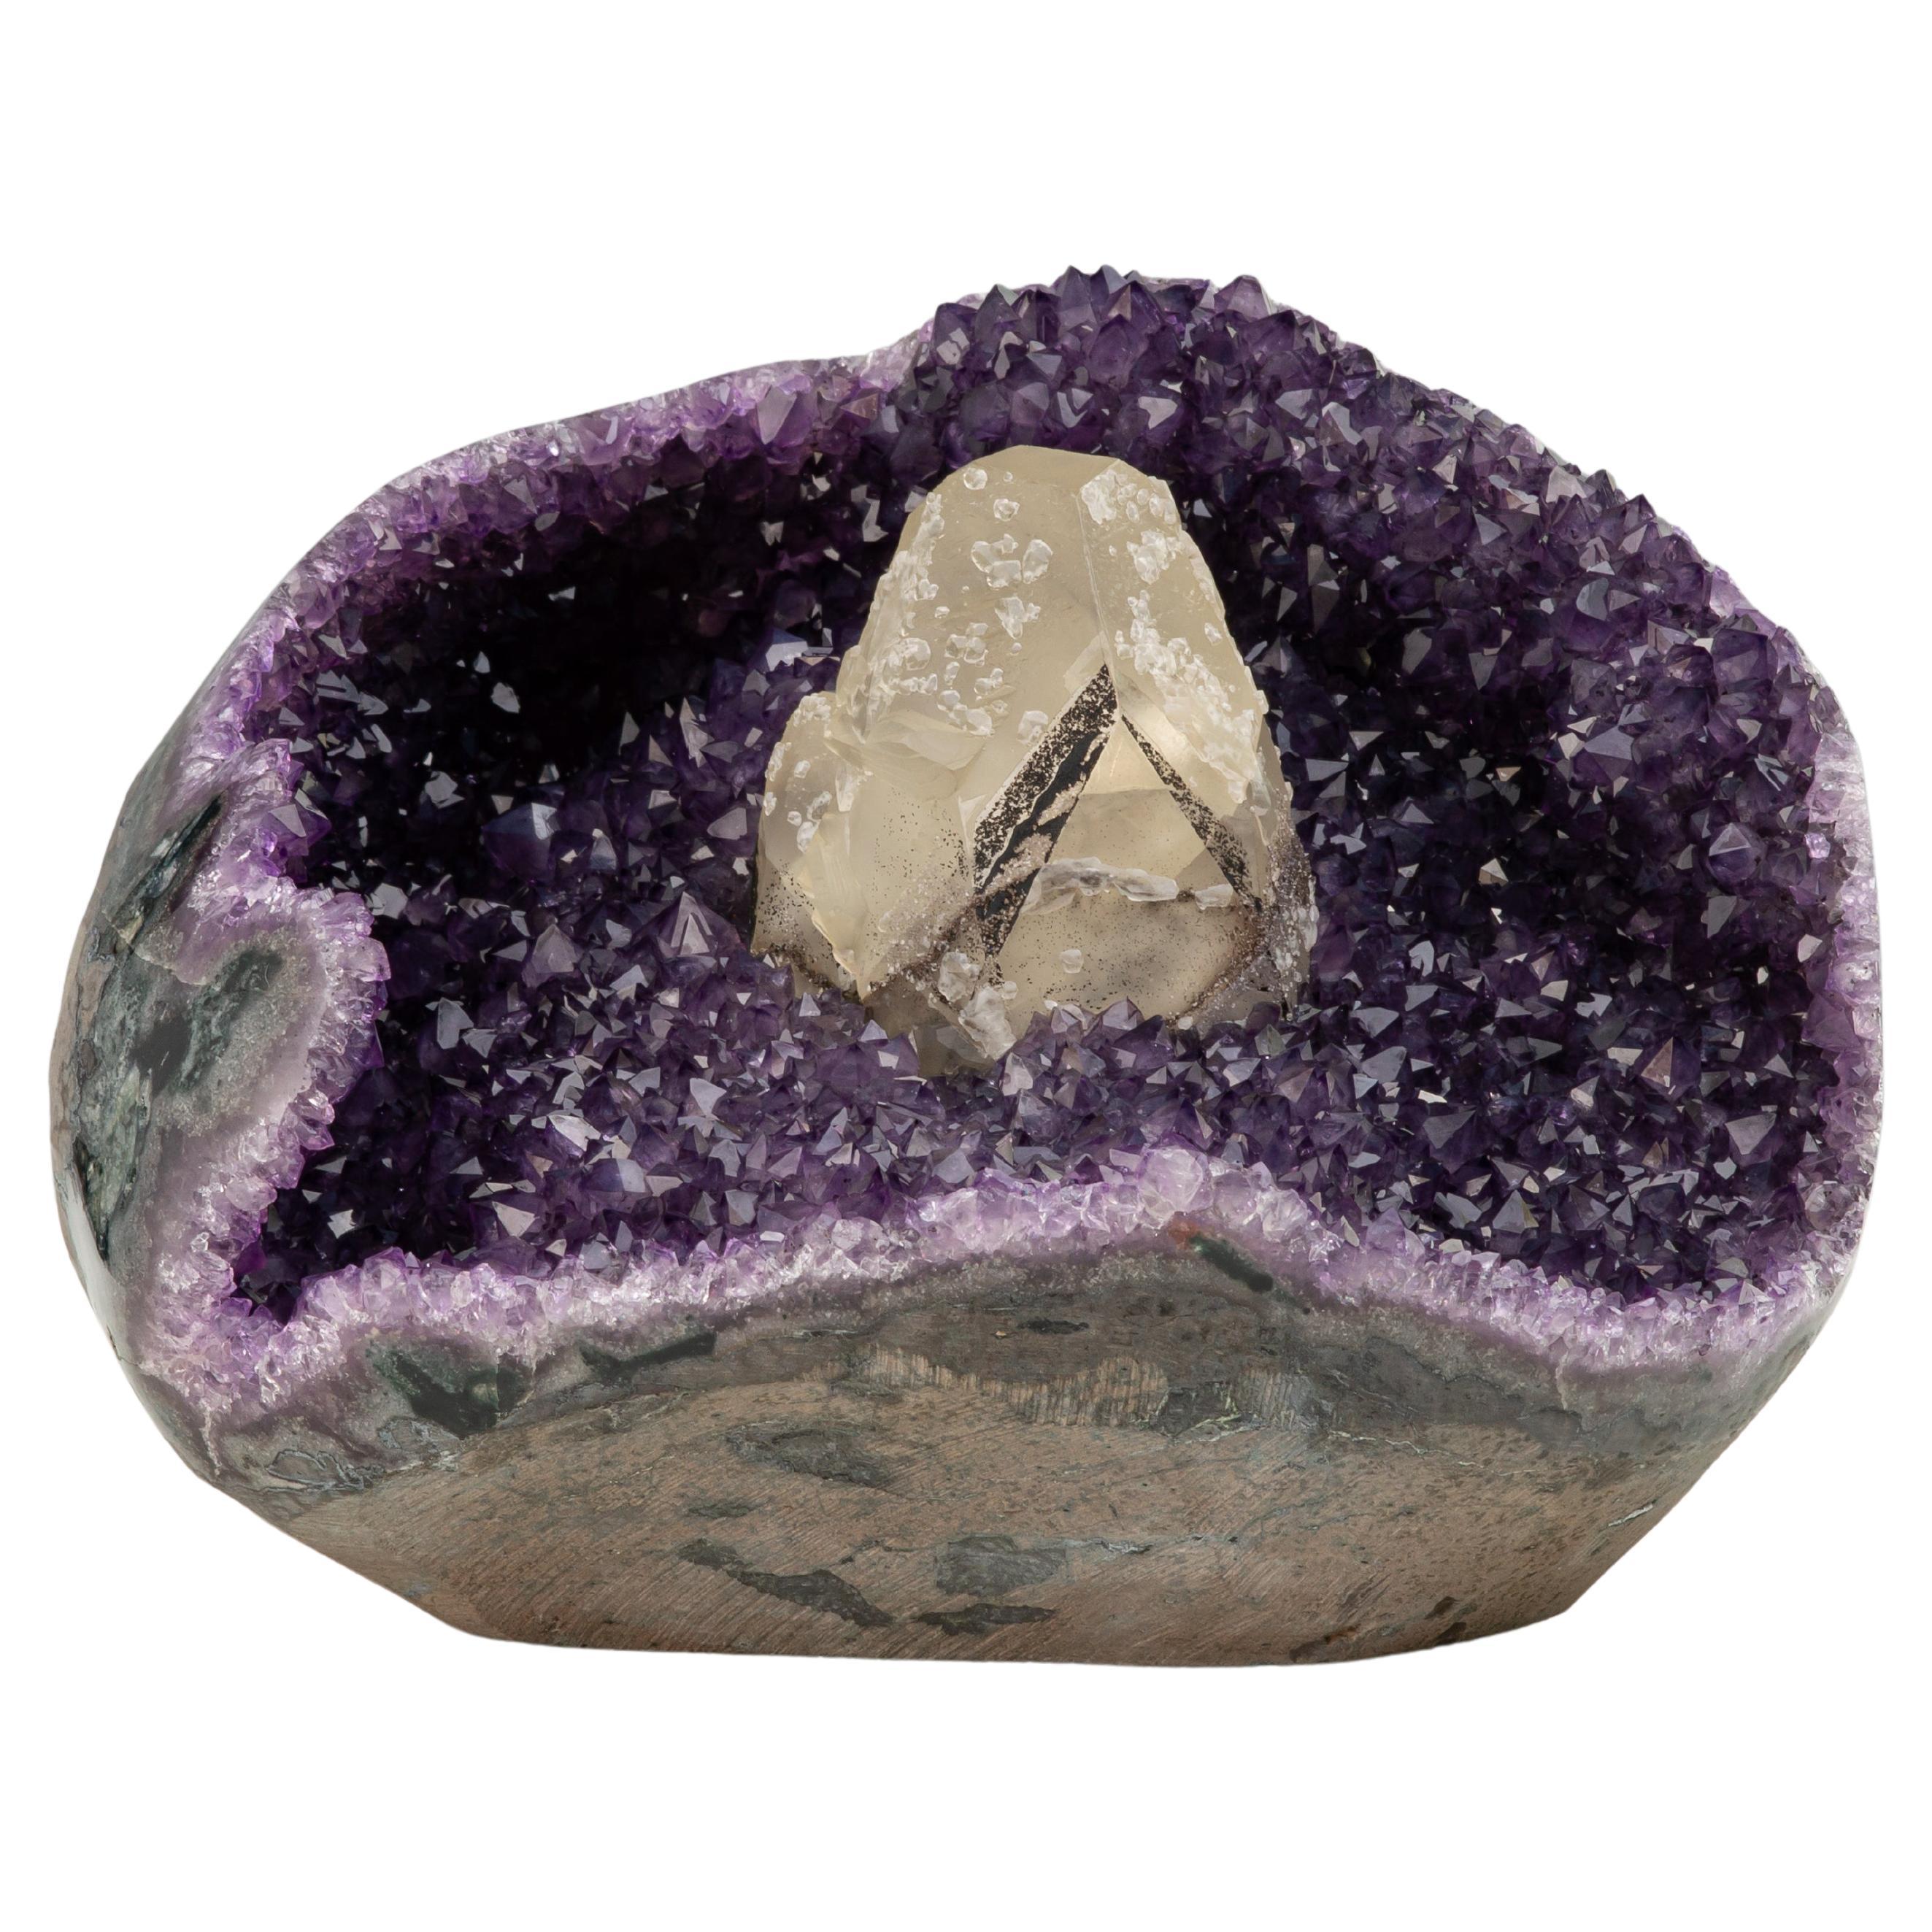 Der Amethyst calcit und der schwarze epitaxische Goethit - eine seltene Steinformation im Angebot